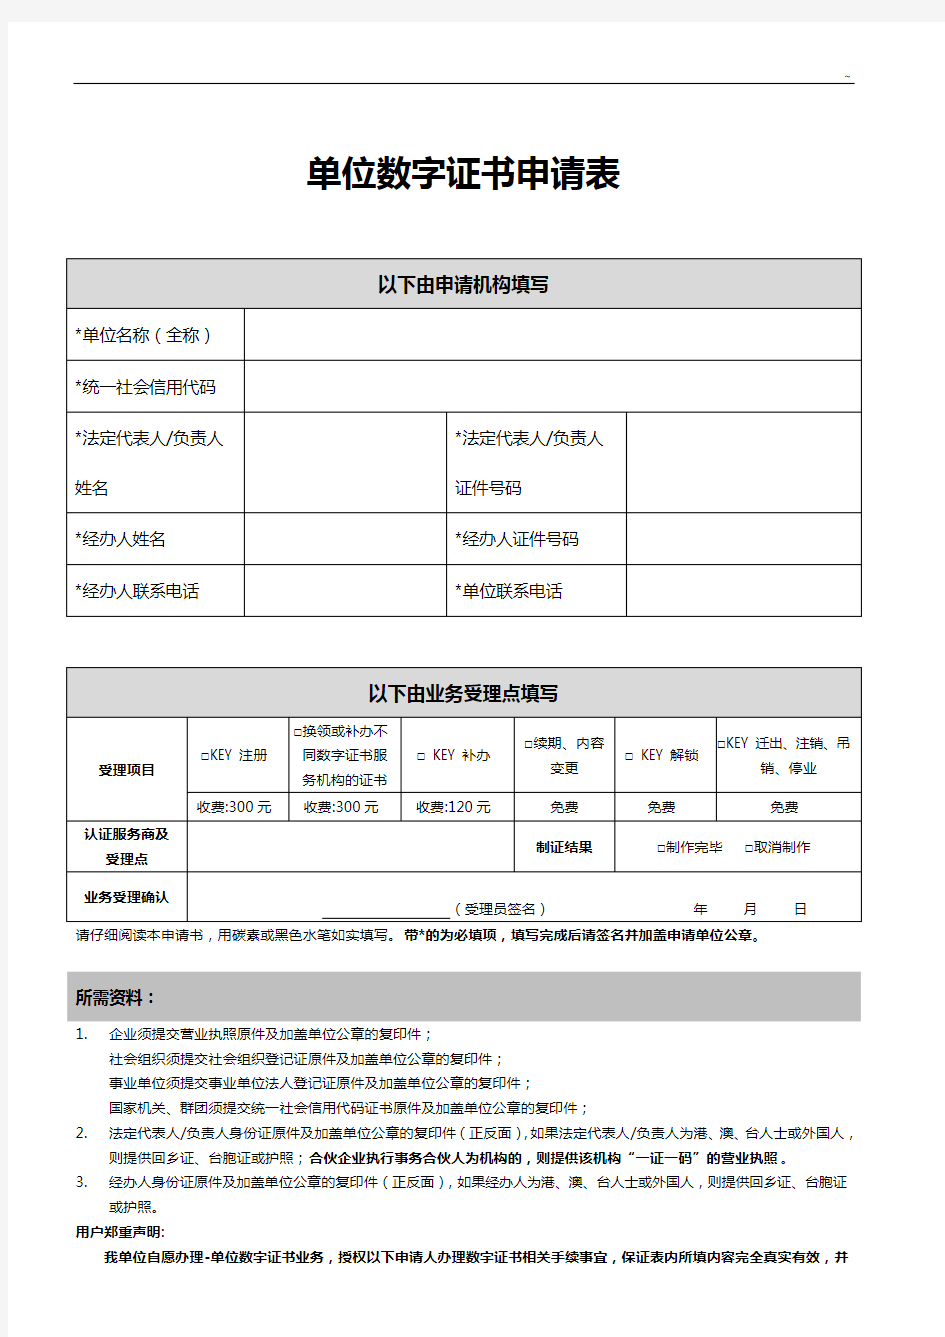 欢迎光临深圳标准规定院-申领组织机构代码证基本信息登记表